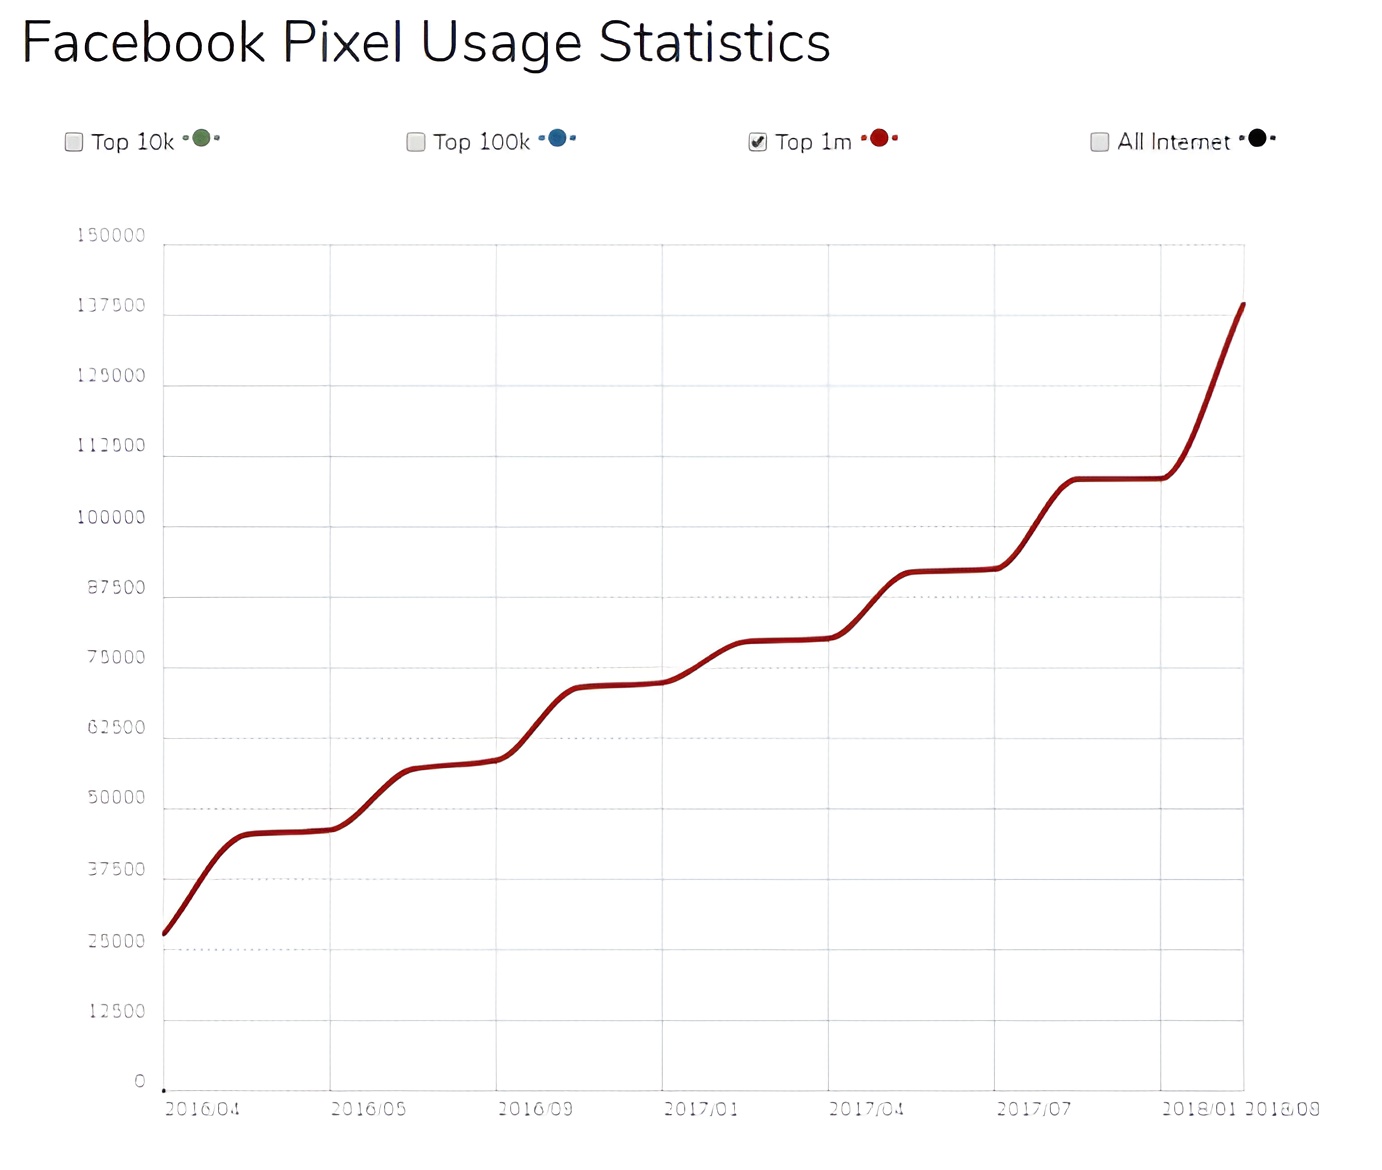 uso del pixel de facebook alrededor del mundo- pubicida en faceb